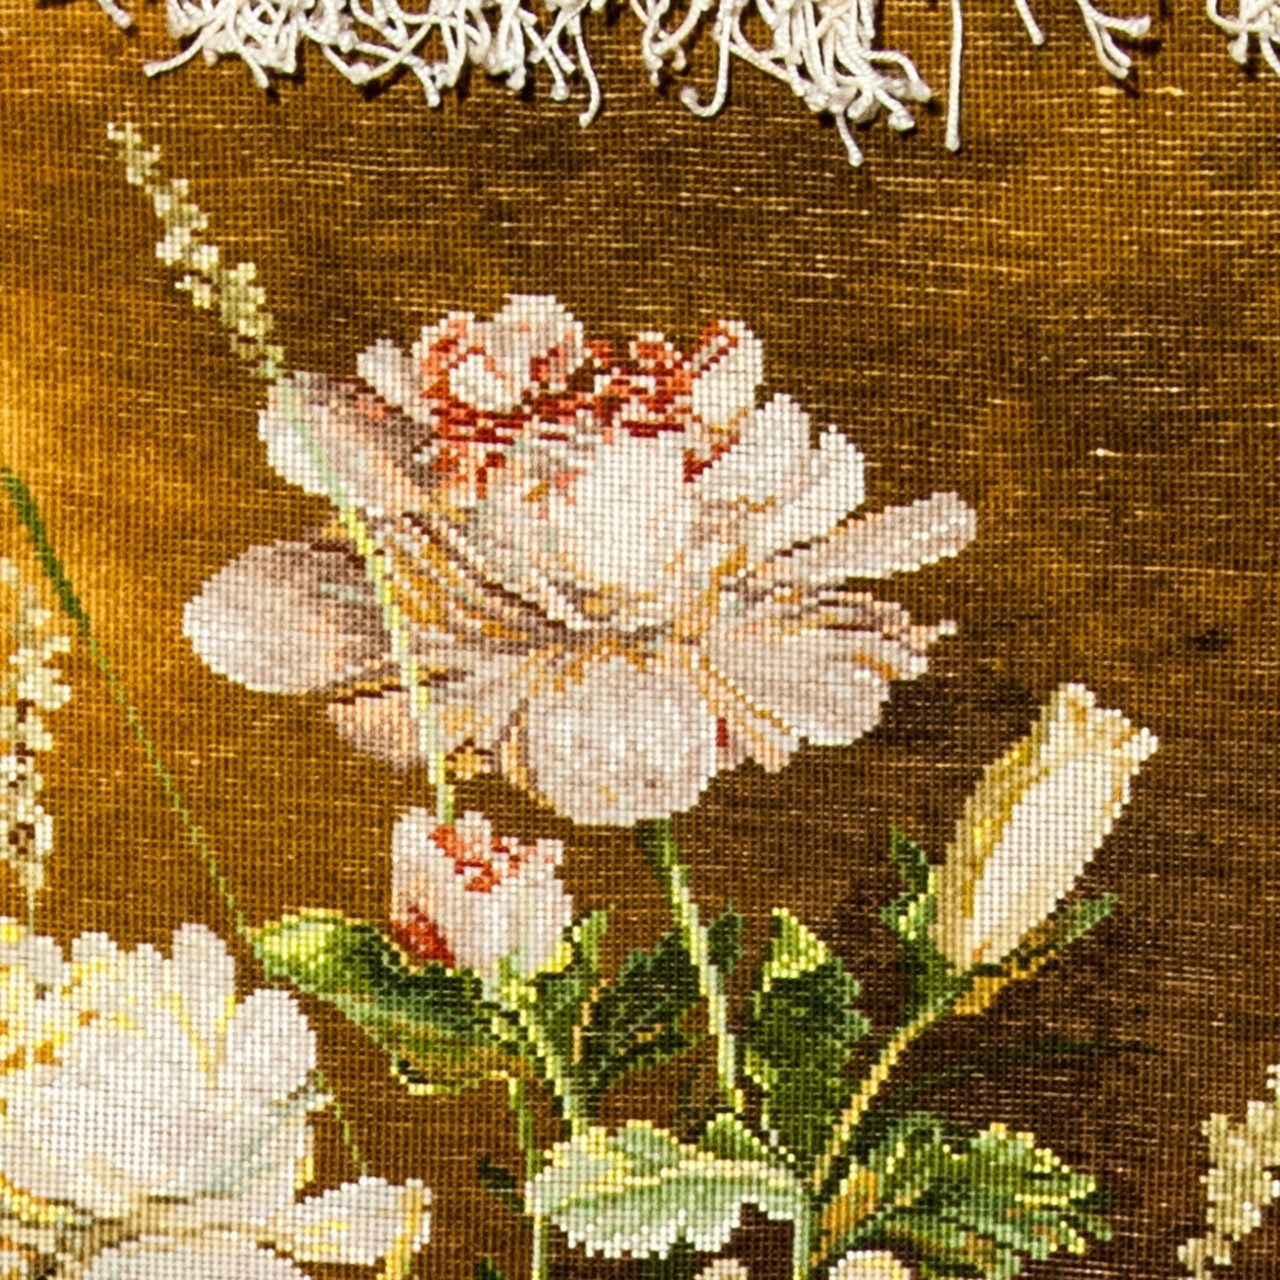 تابلو فرش دستباف طرح گل صد تومانی کد 901123